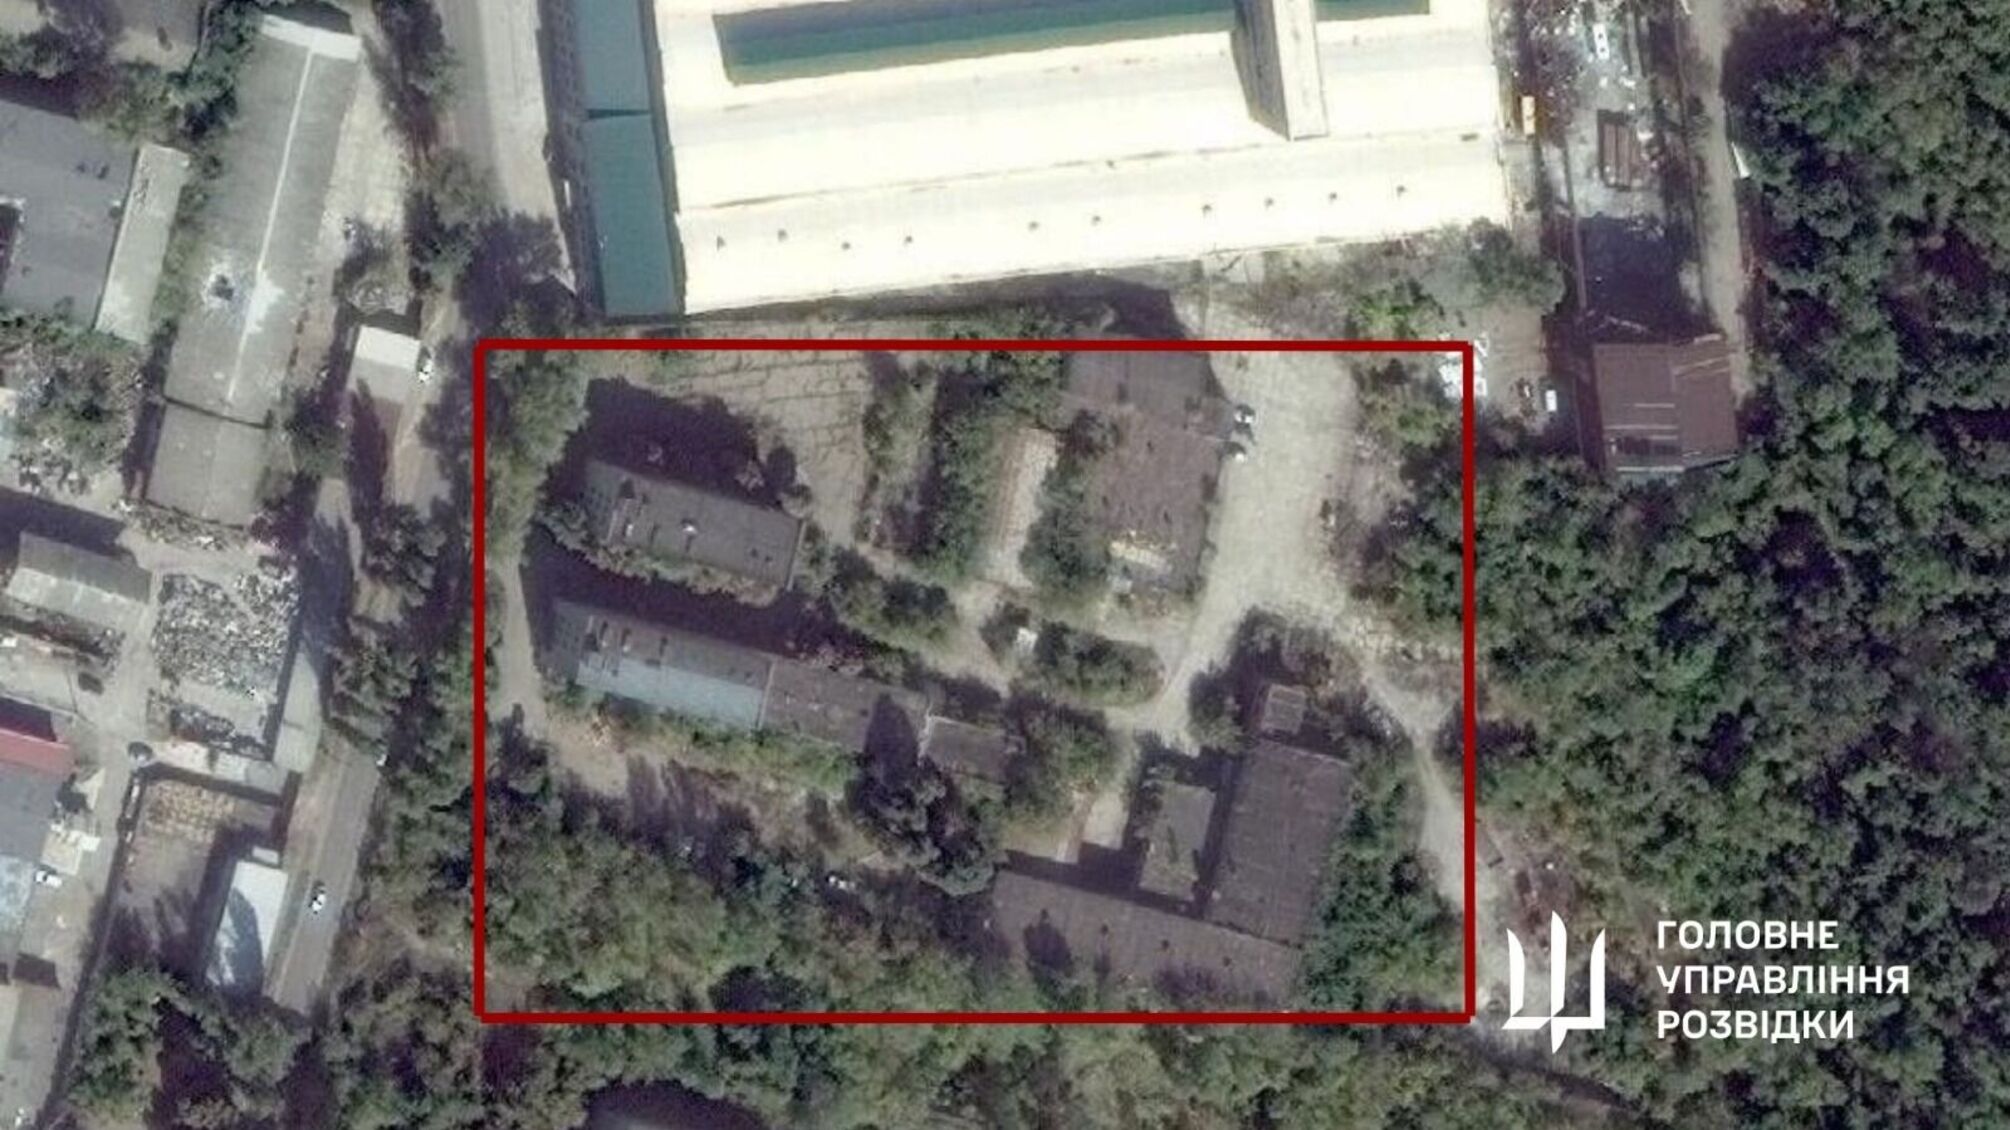 Бойцы ГУР МО взорвали склад с боекомплектом врага в оккупированном Донецке